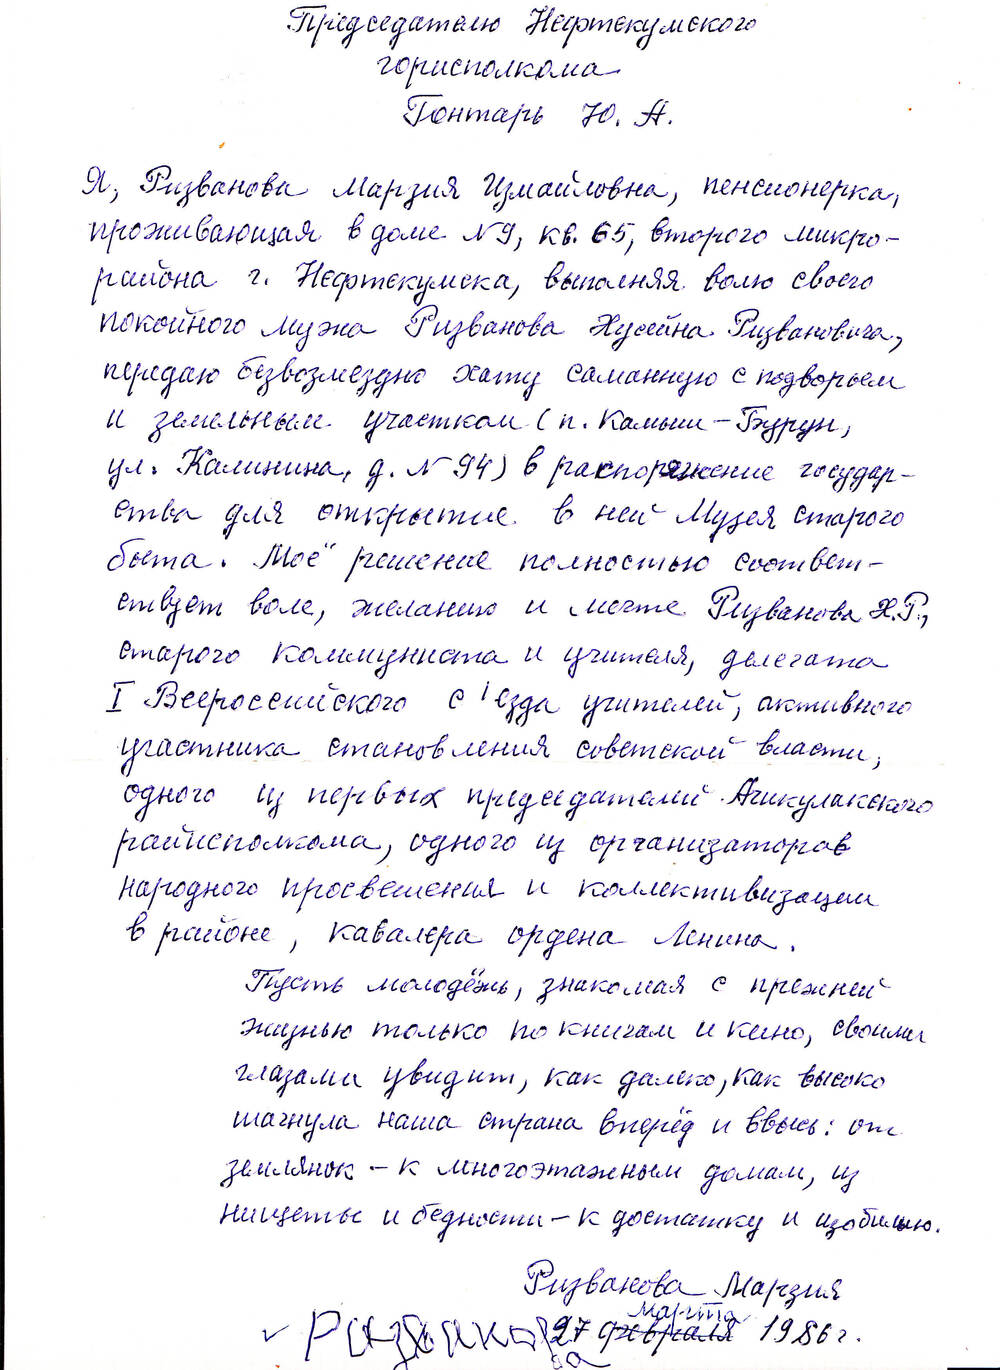 Заявление о передачи хаты Ризванова Хусейна Ризвановича для музея.